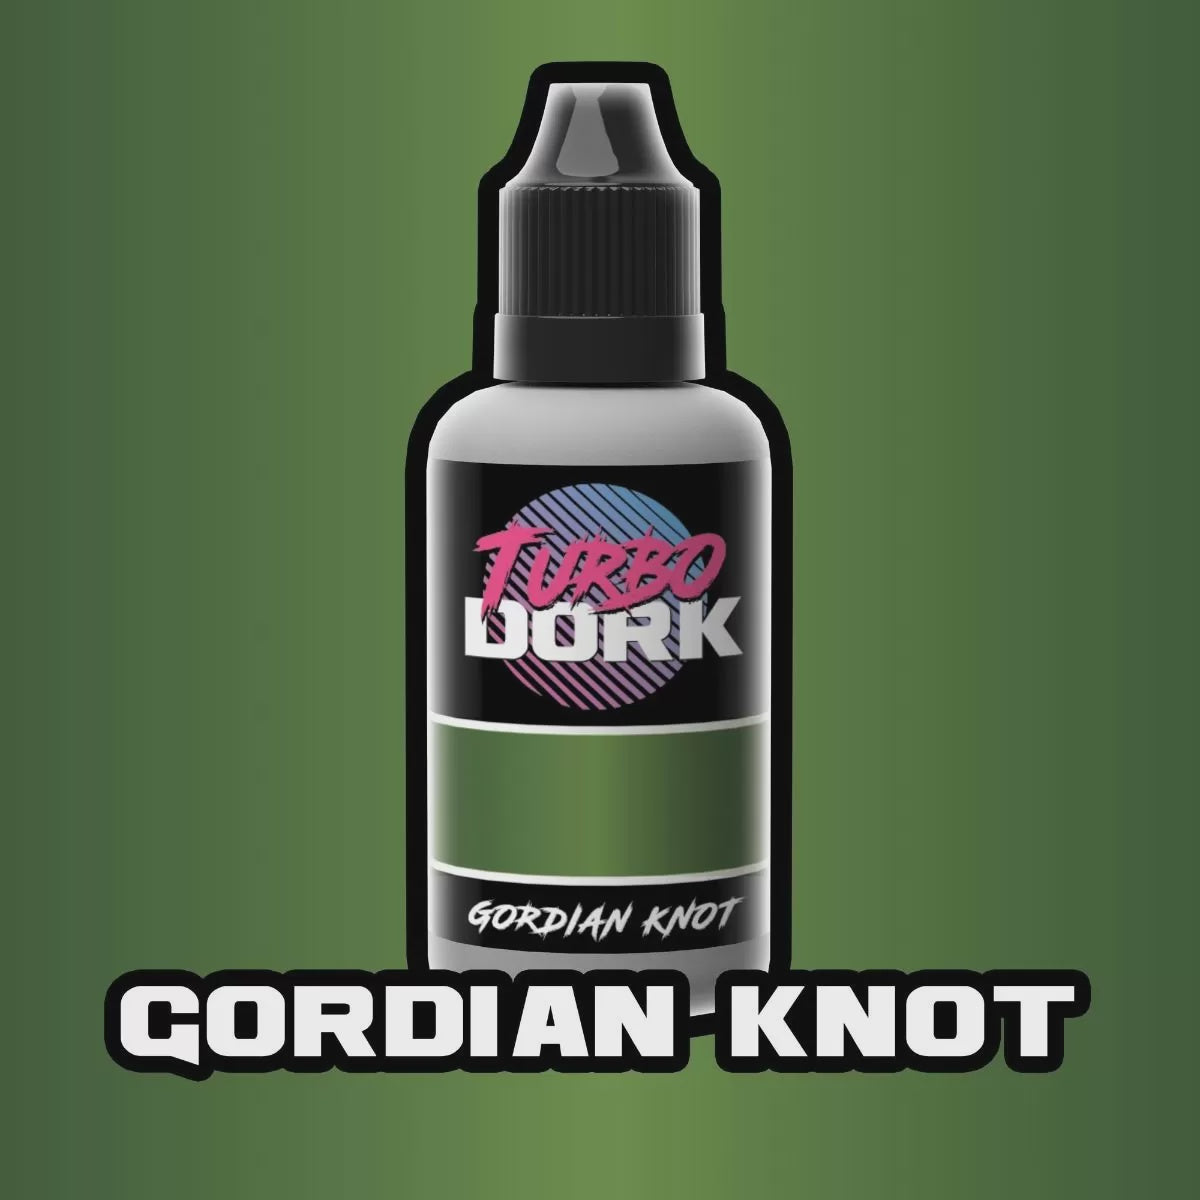 Turbo Dork Gordian Knot Metallic Acrylic Paint 20ml Bottle